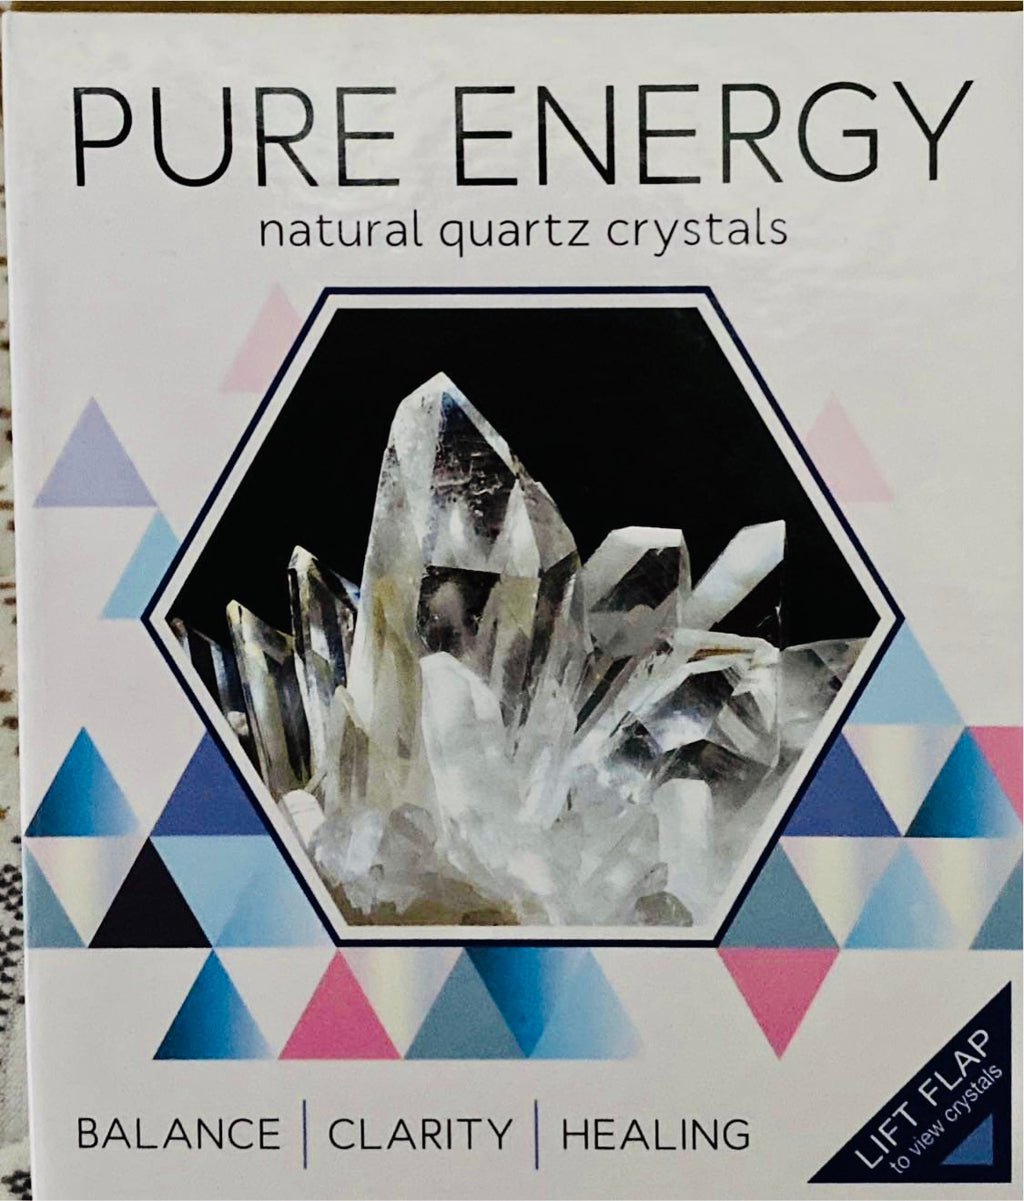 Pure Energy Natural Quartz Crystals